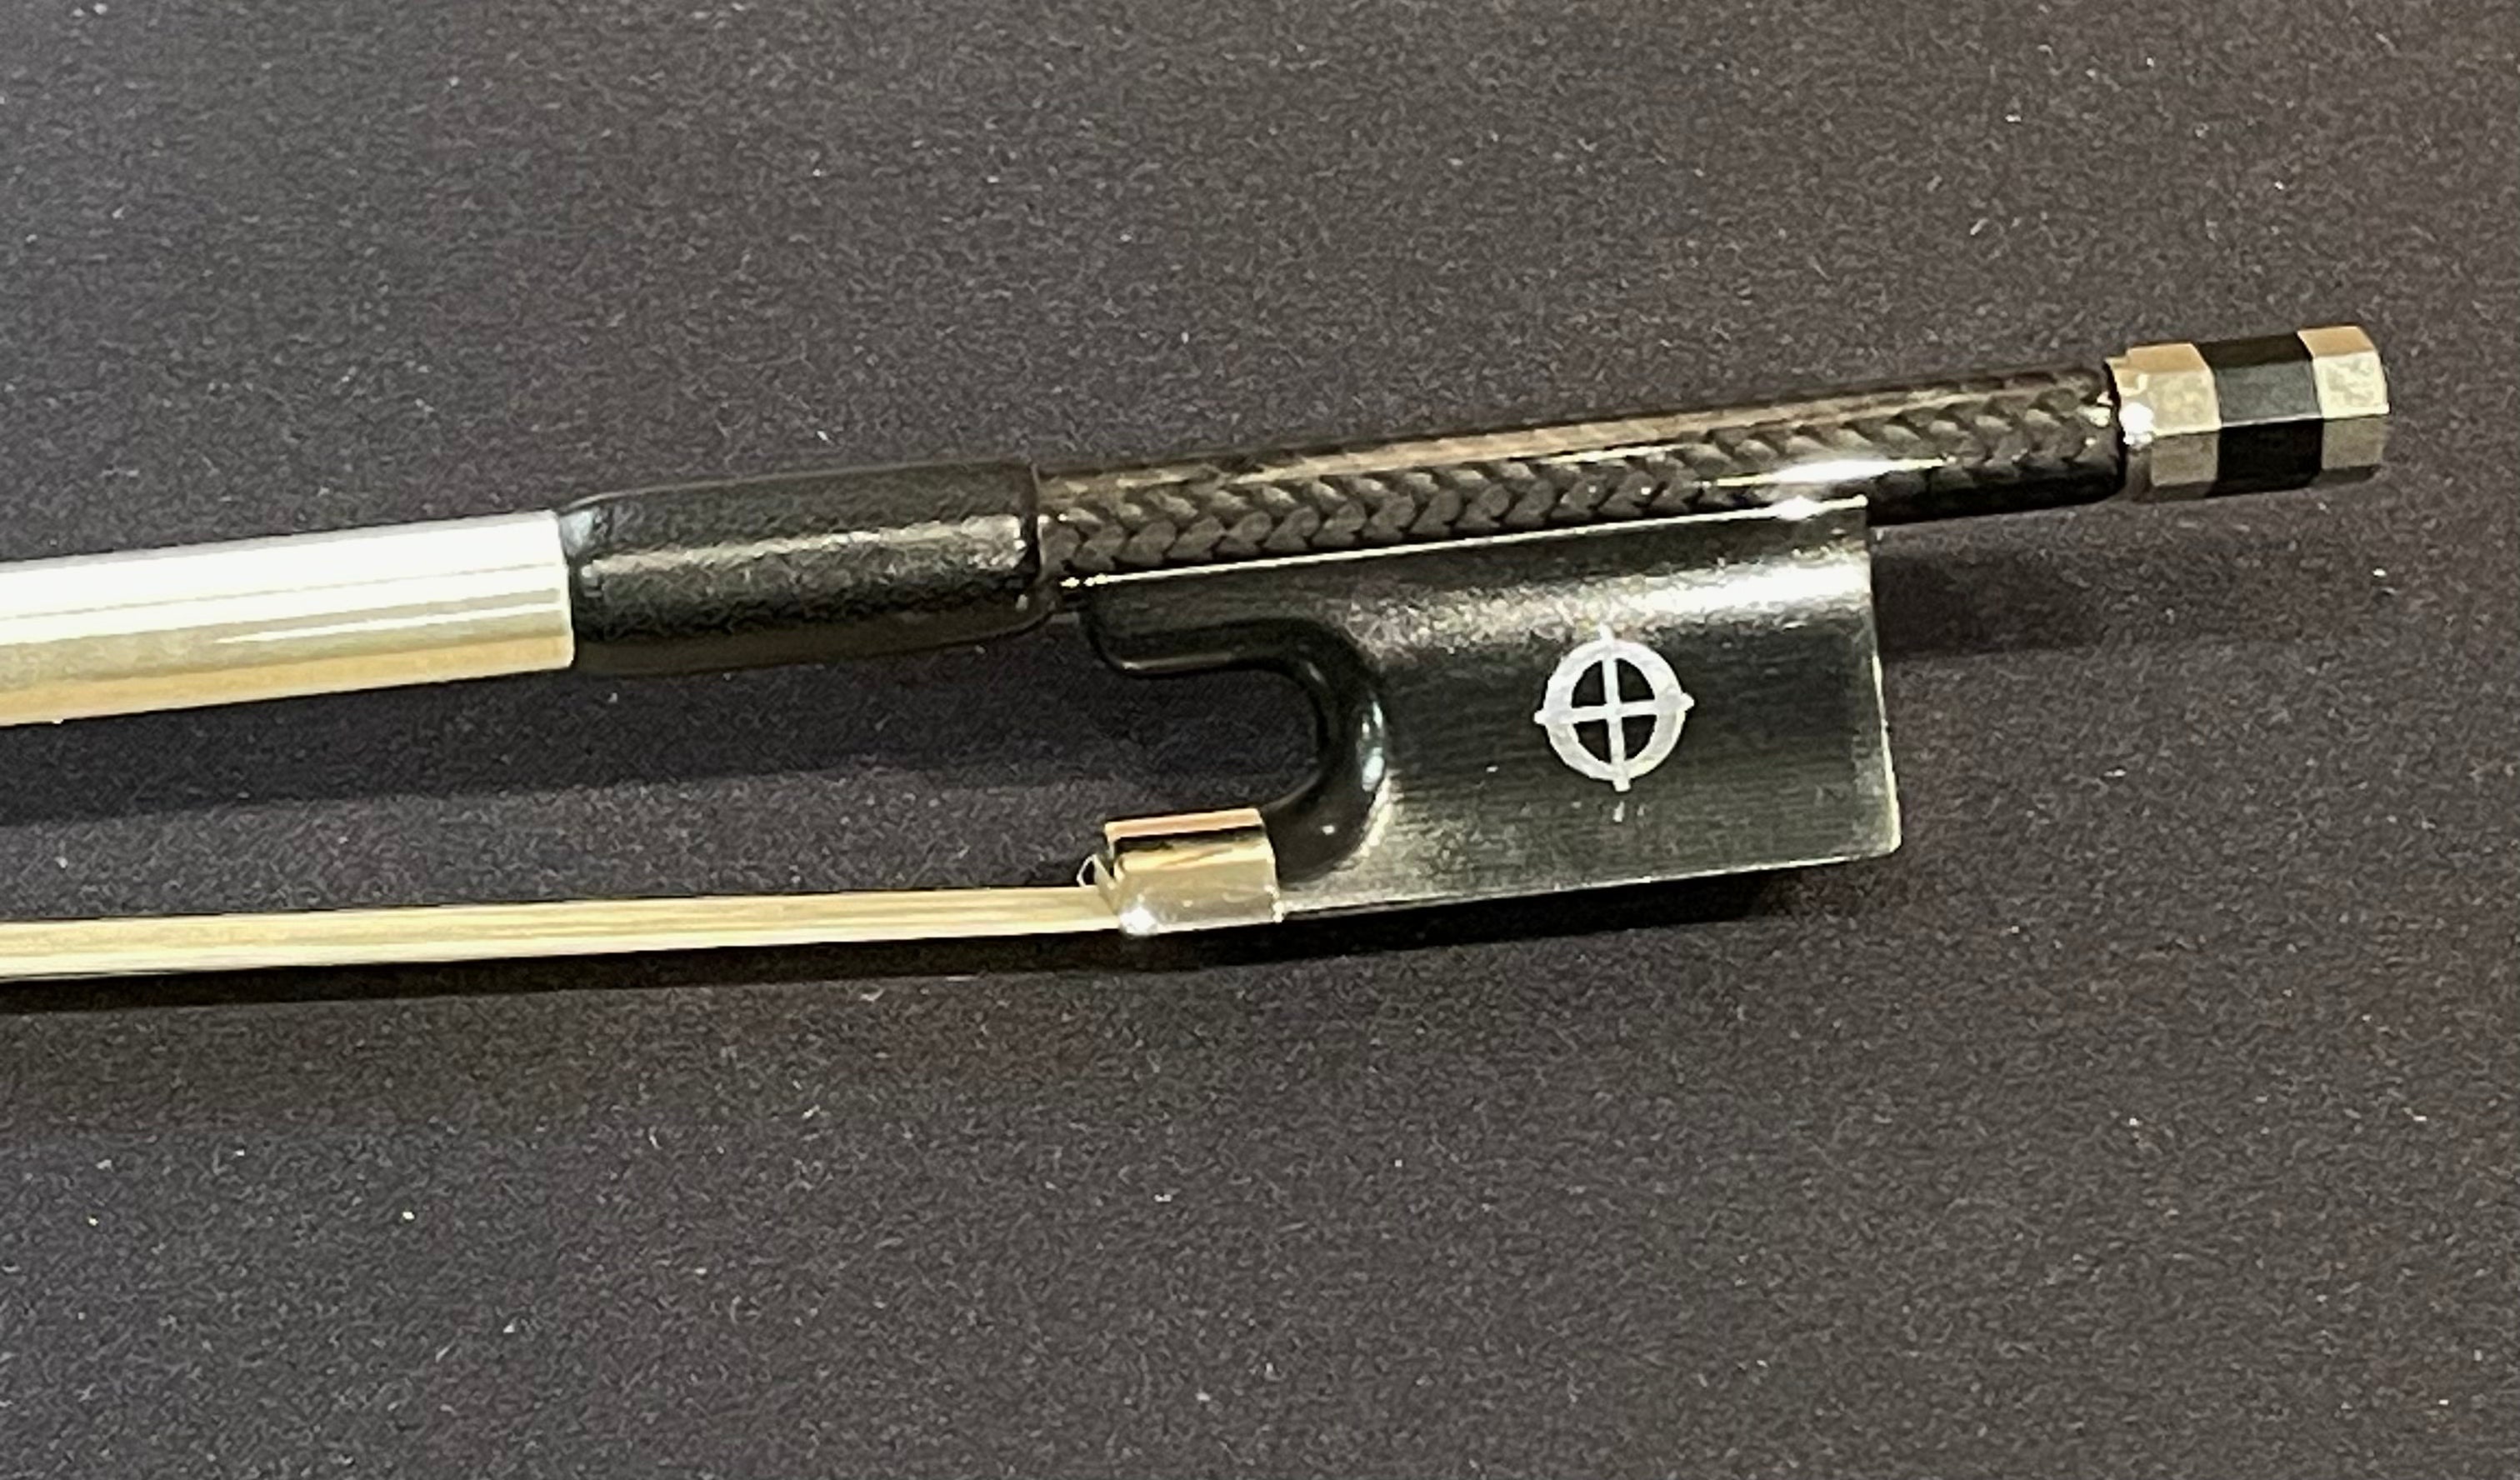 4/4 Violin Bow - CodaBow Original, Diamond SX Model, Carbon Fiber